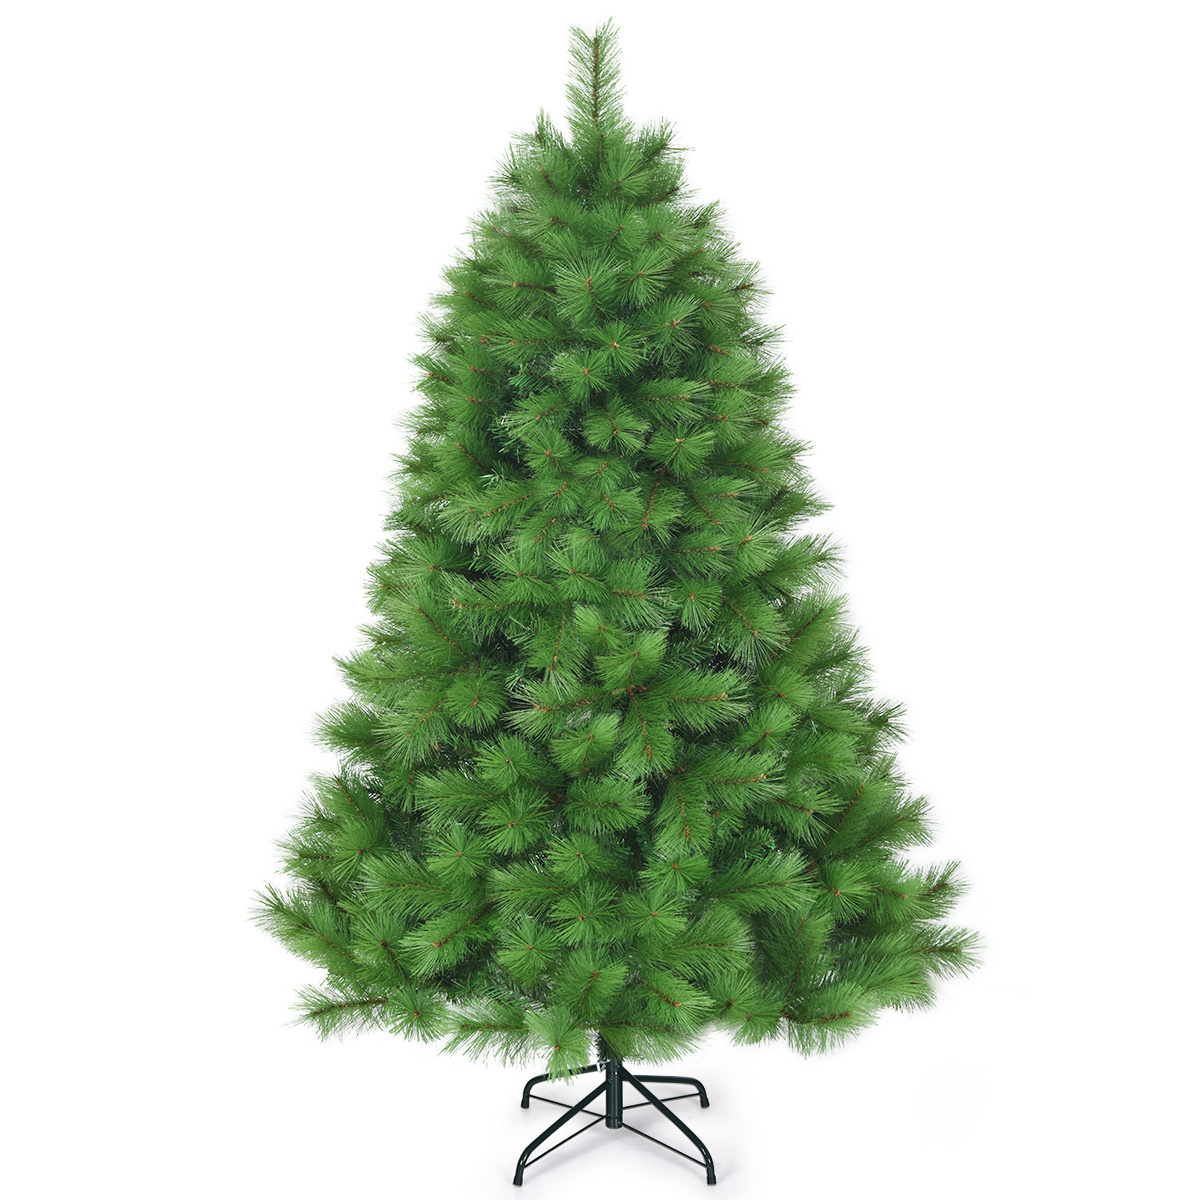 Nadeln 1 günstig Kaufen-Coast 180 cm künstlicher Weihnachtsbaum Weihnachtsbaum pvc Nadeln künstlicher Baum mit Metallständer grün. Coast 180 cm künstlicher Weihnachtsbaum Weihnachtsbaum pvc Nadeln künstlicher Baum mit Metallständer grün <!